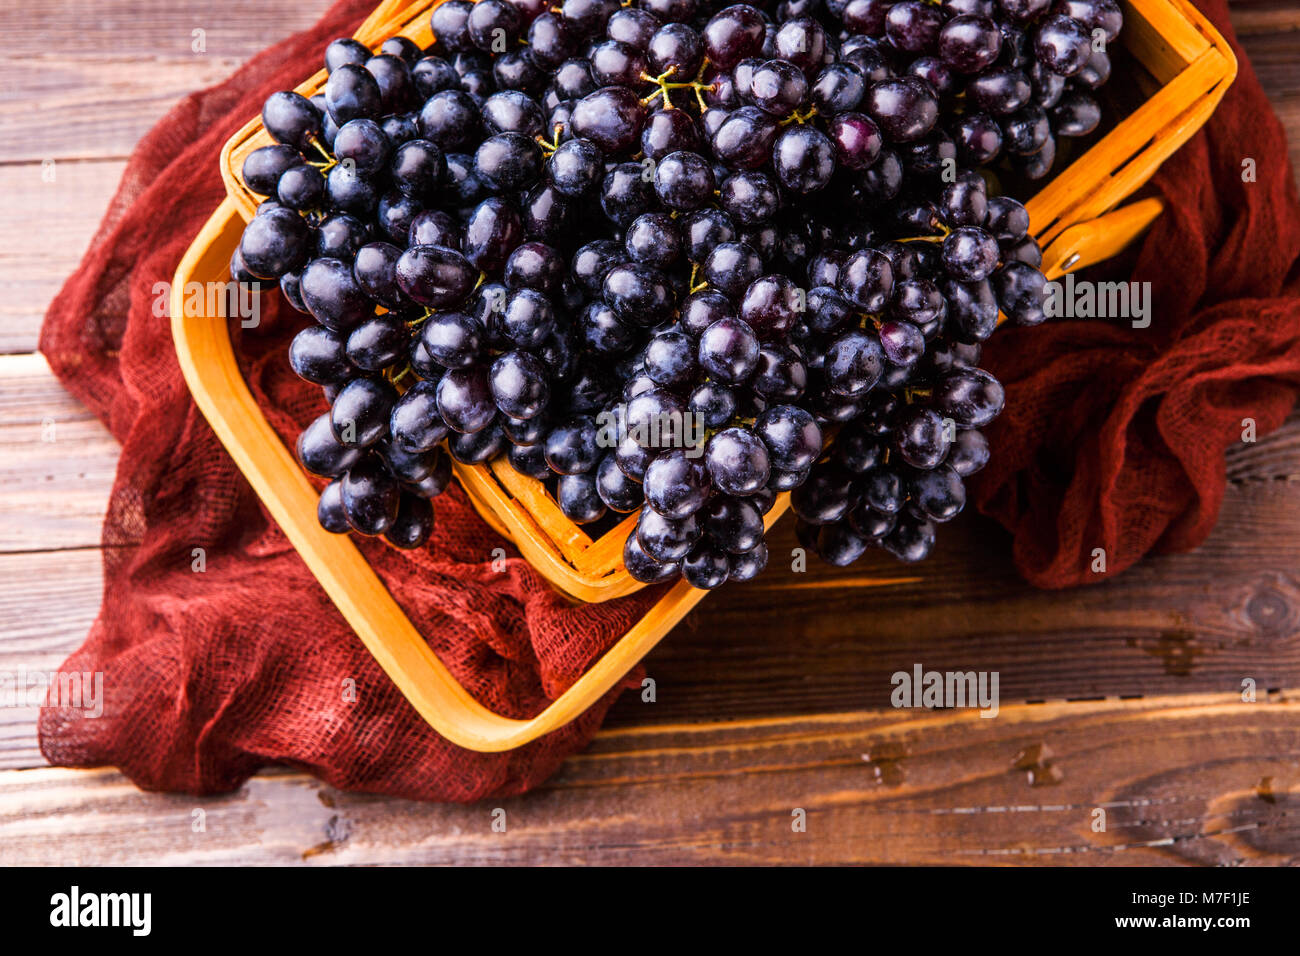 Immagine da sopra di uve nere nel cesto in legno con panno claret Foto Stock